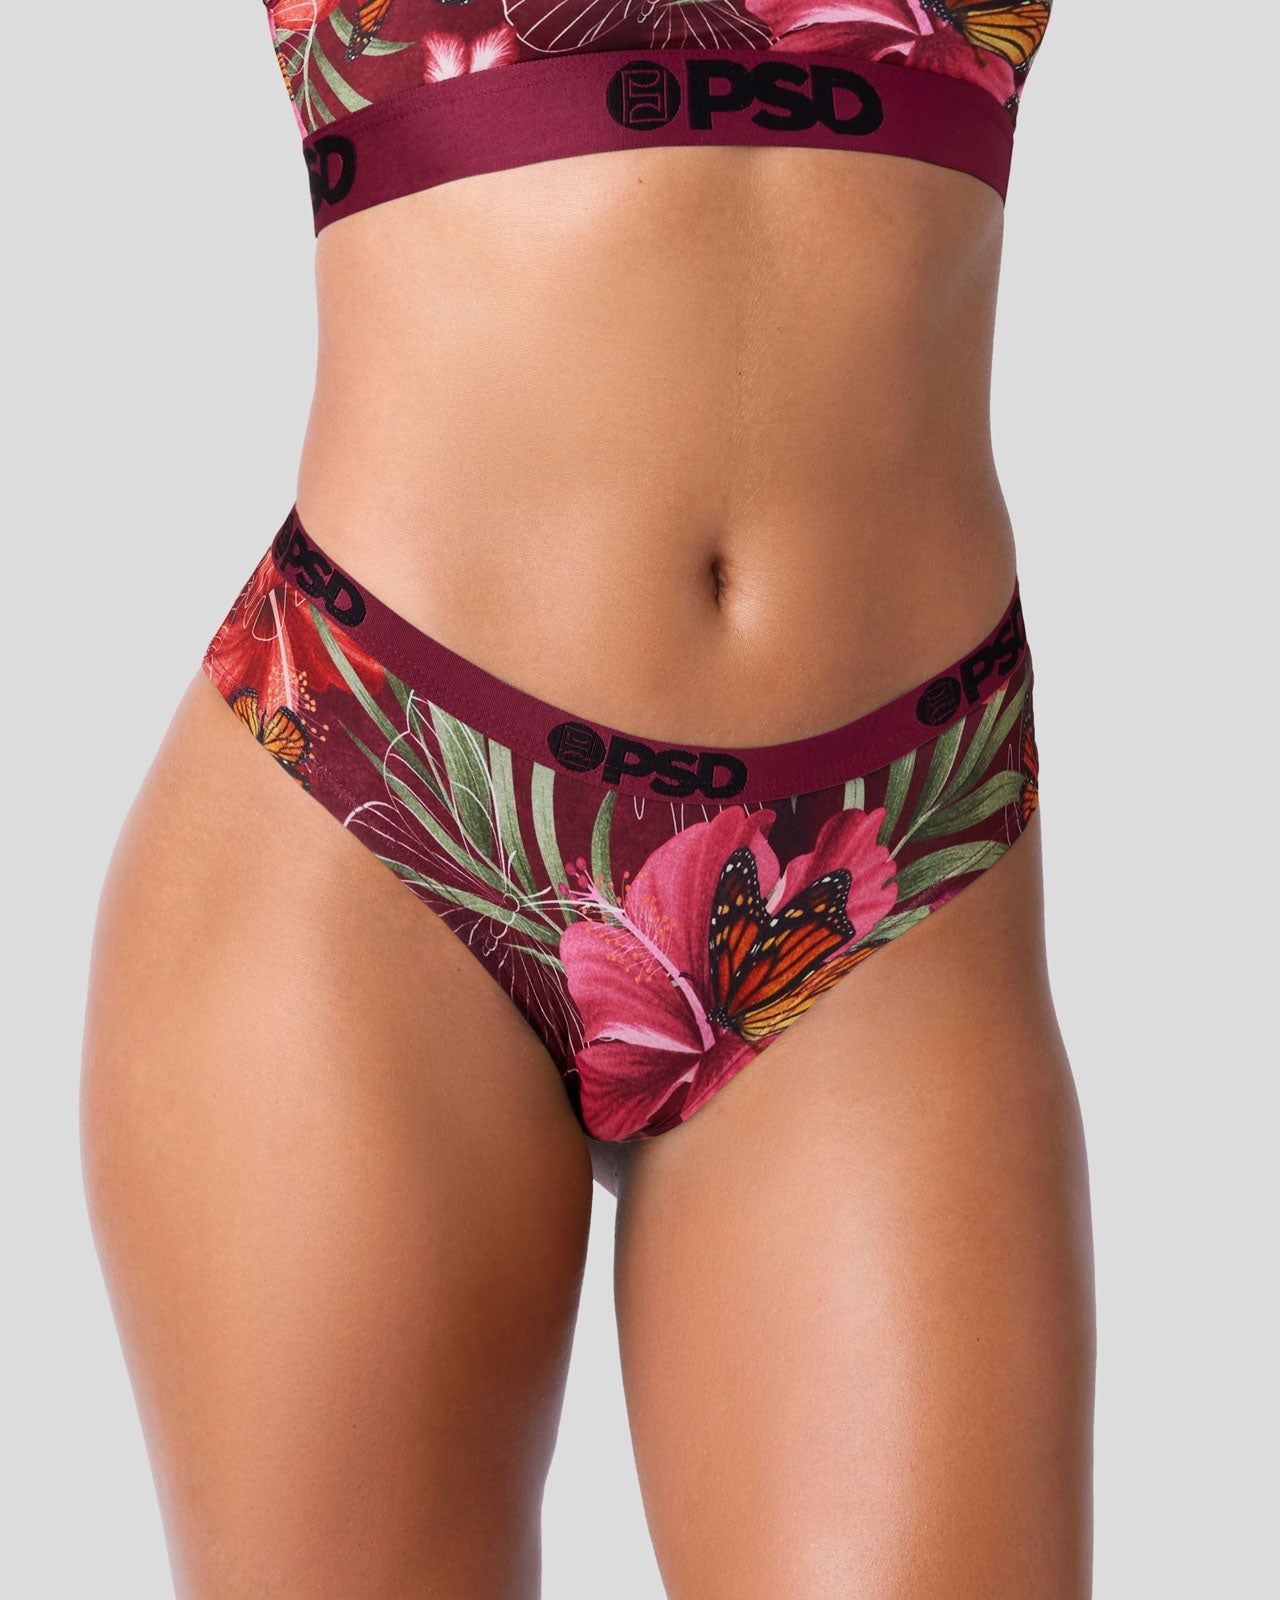 Sommer Garden Cheeky Cut Underwear - PSD Underwear – Sommer Ray's Shop